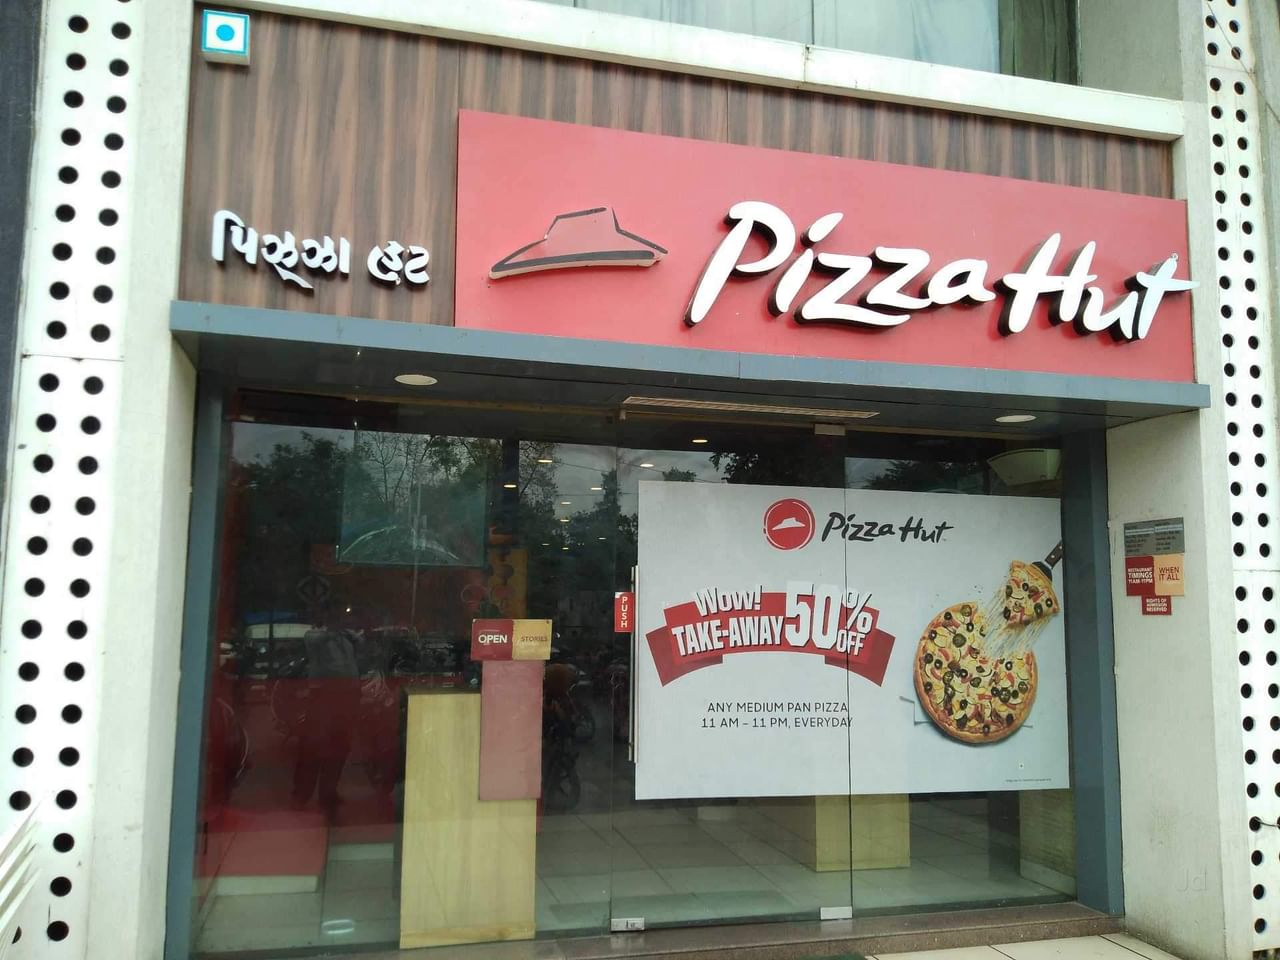 Pizza Hutમાં પિત્ઝાની સાથે પીરસવામાં આવી જીવાત! આખરે કરાયું બંધ, જુઓ VIDEO